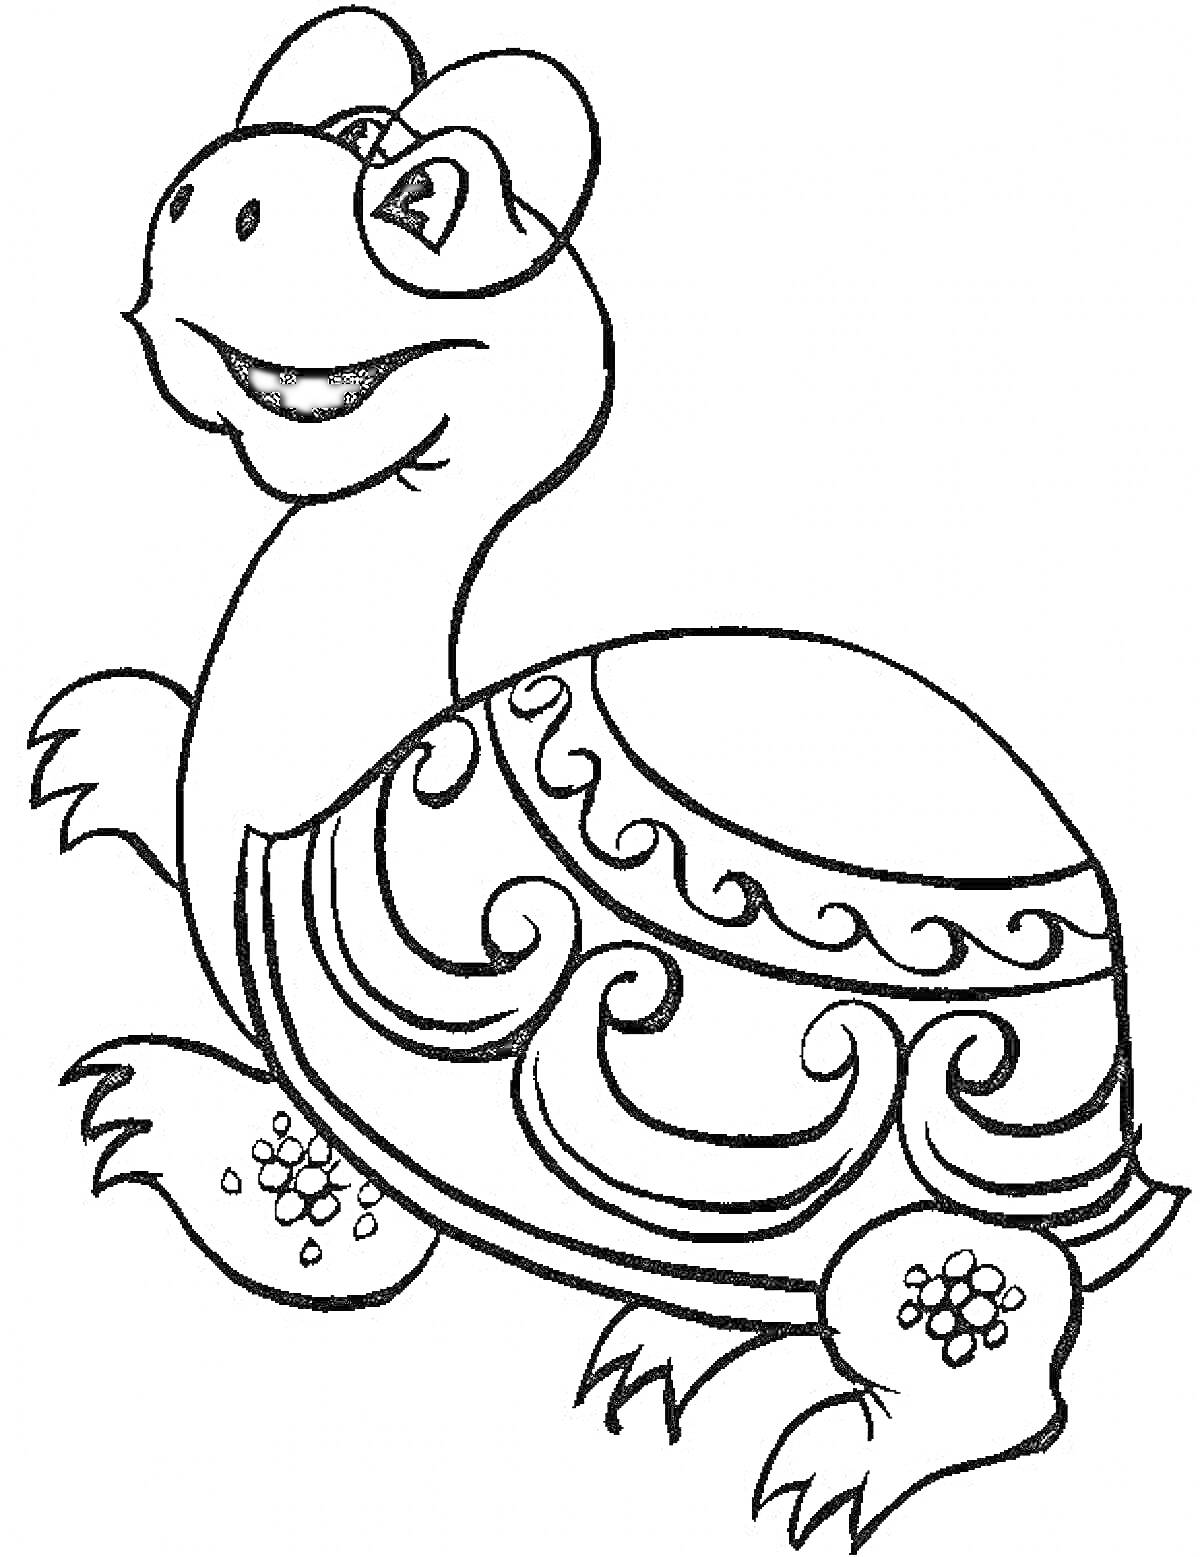 Раскраска Черепаха с узорами на панцире и радостным выражением лица